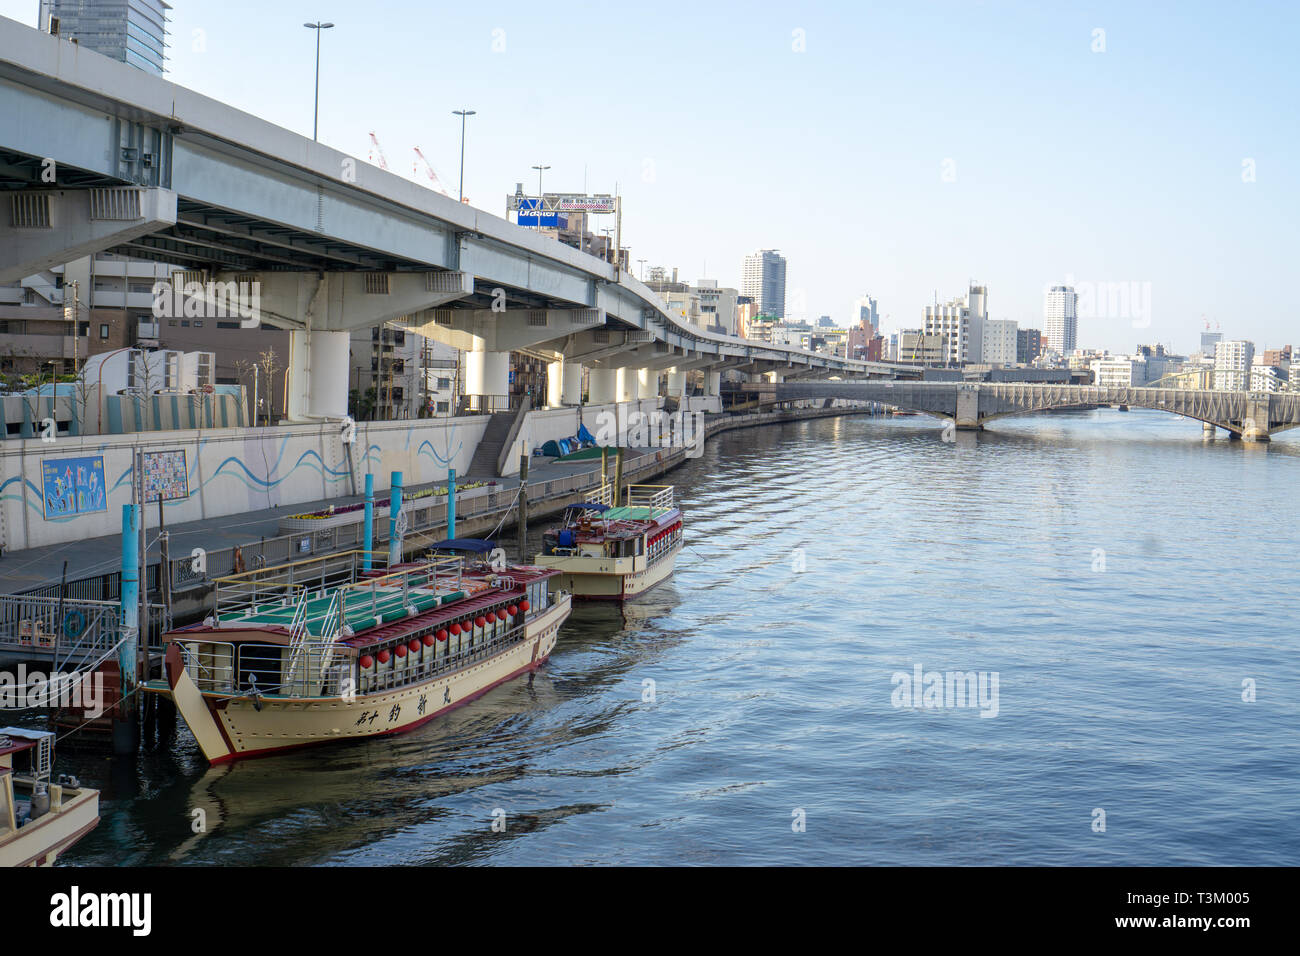 Kreuzfahrten sind sehr beliebt auf Sumida River in Tokio. Es ist eine großartige Möglichkeit, die Stadt zu sehen, wenn Sie genügend Zeit haben, den ganzen Tag auf dem Wasser zu verbringen. Stockfoto